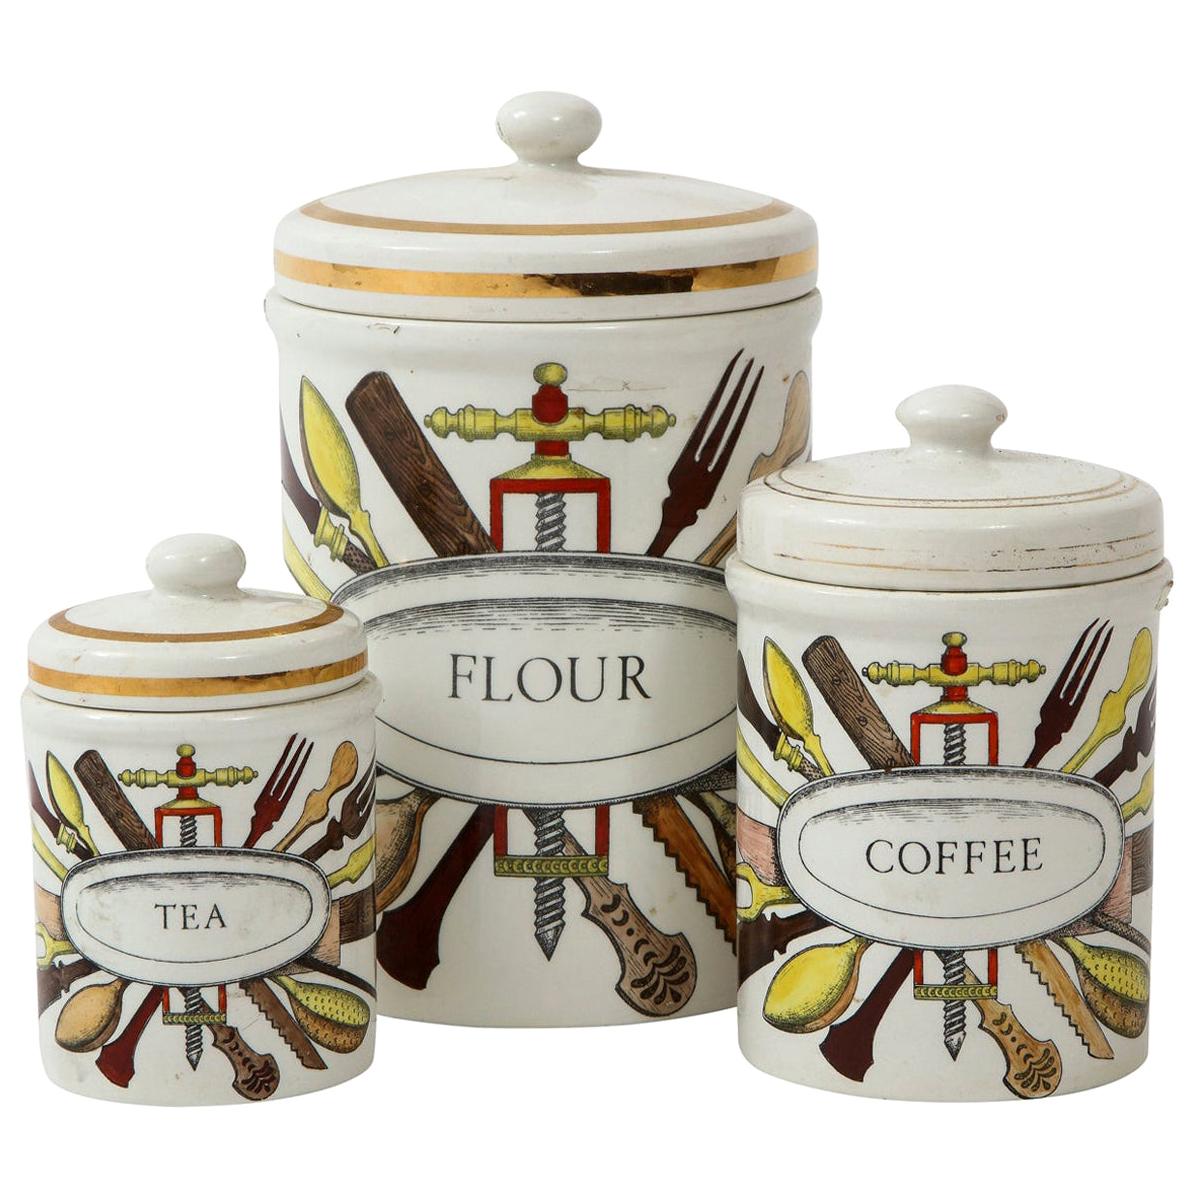 Vintage-Keramik-Kanister- Aufbewahrungsgefäße von Piero Fornasetti, Italien, Weizen, Tee, 1960er Jahre